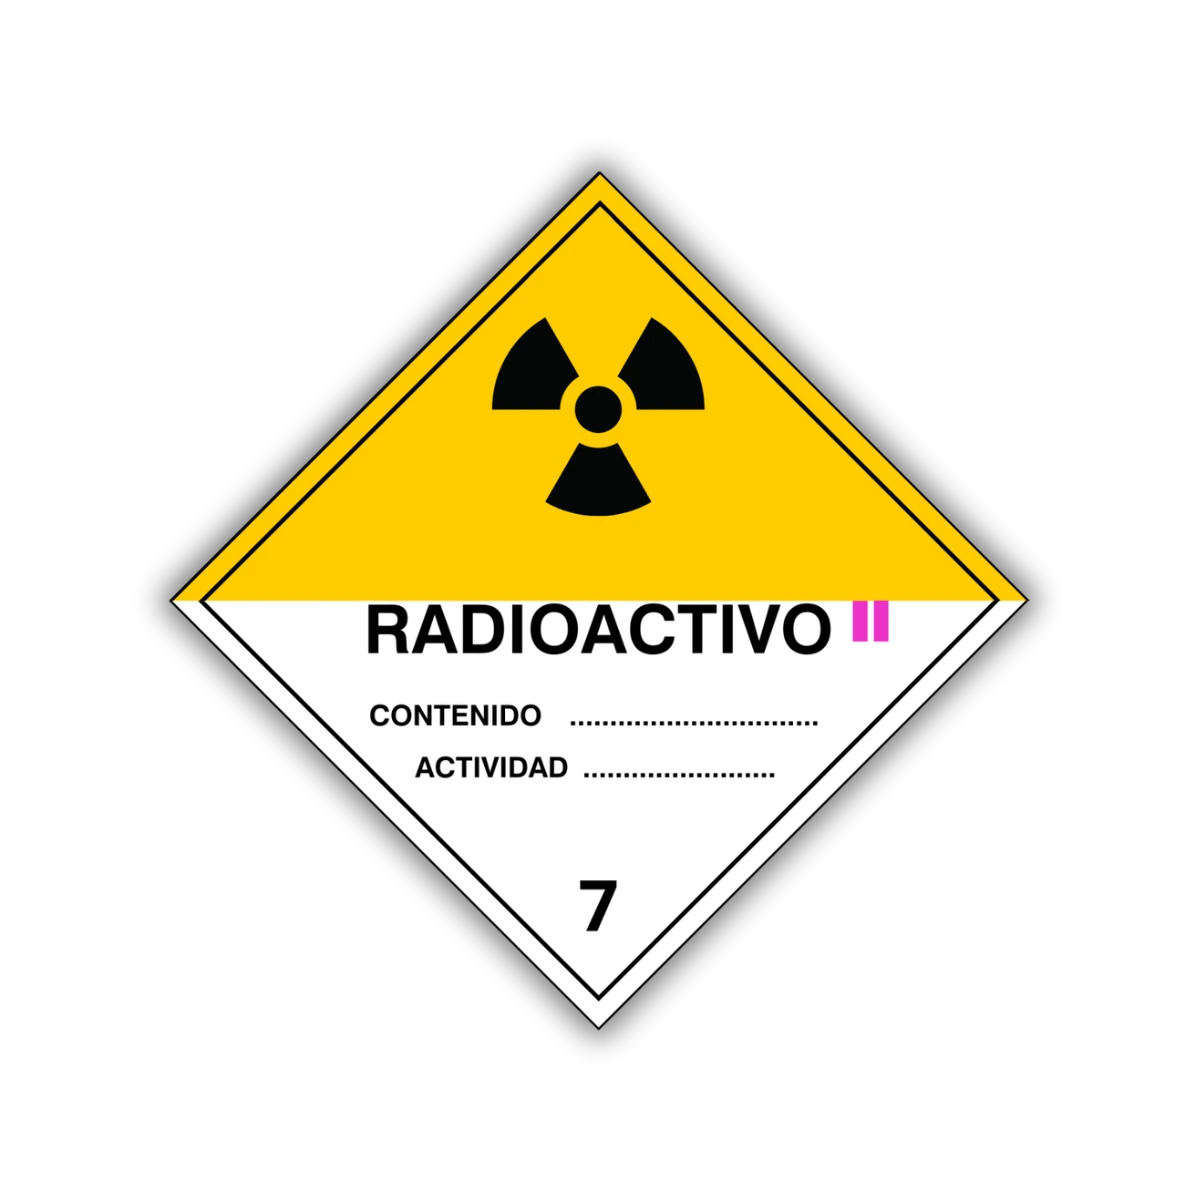 La señal Material radioactivo permite un mejor control y manejo de sustancias peligrosas, así como su correcta señalización para su resguardo.